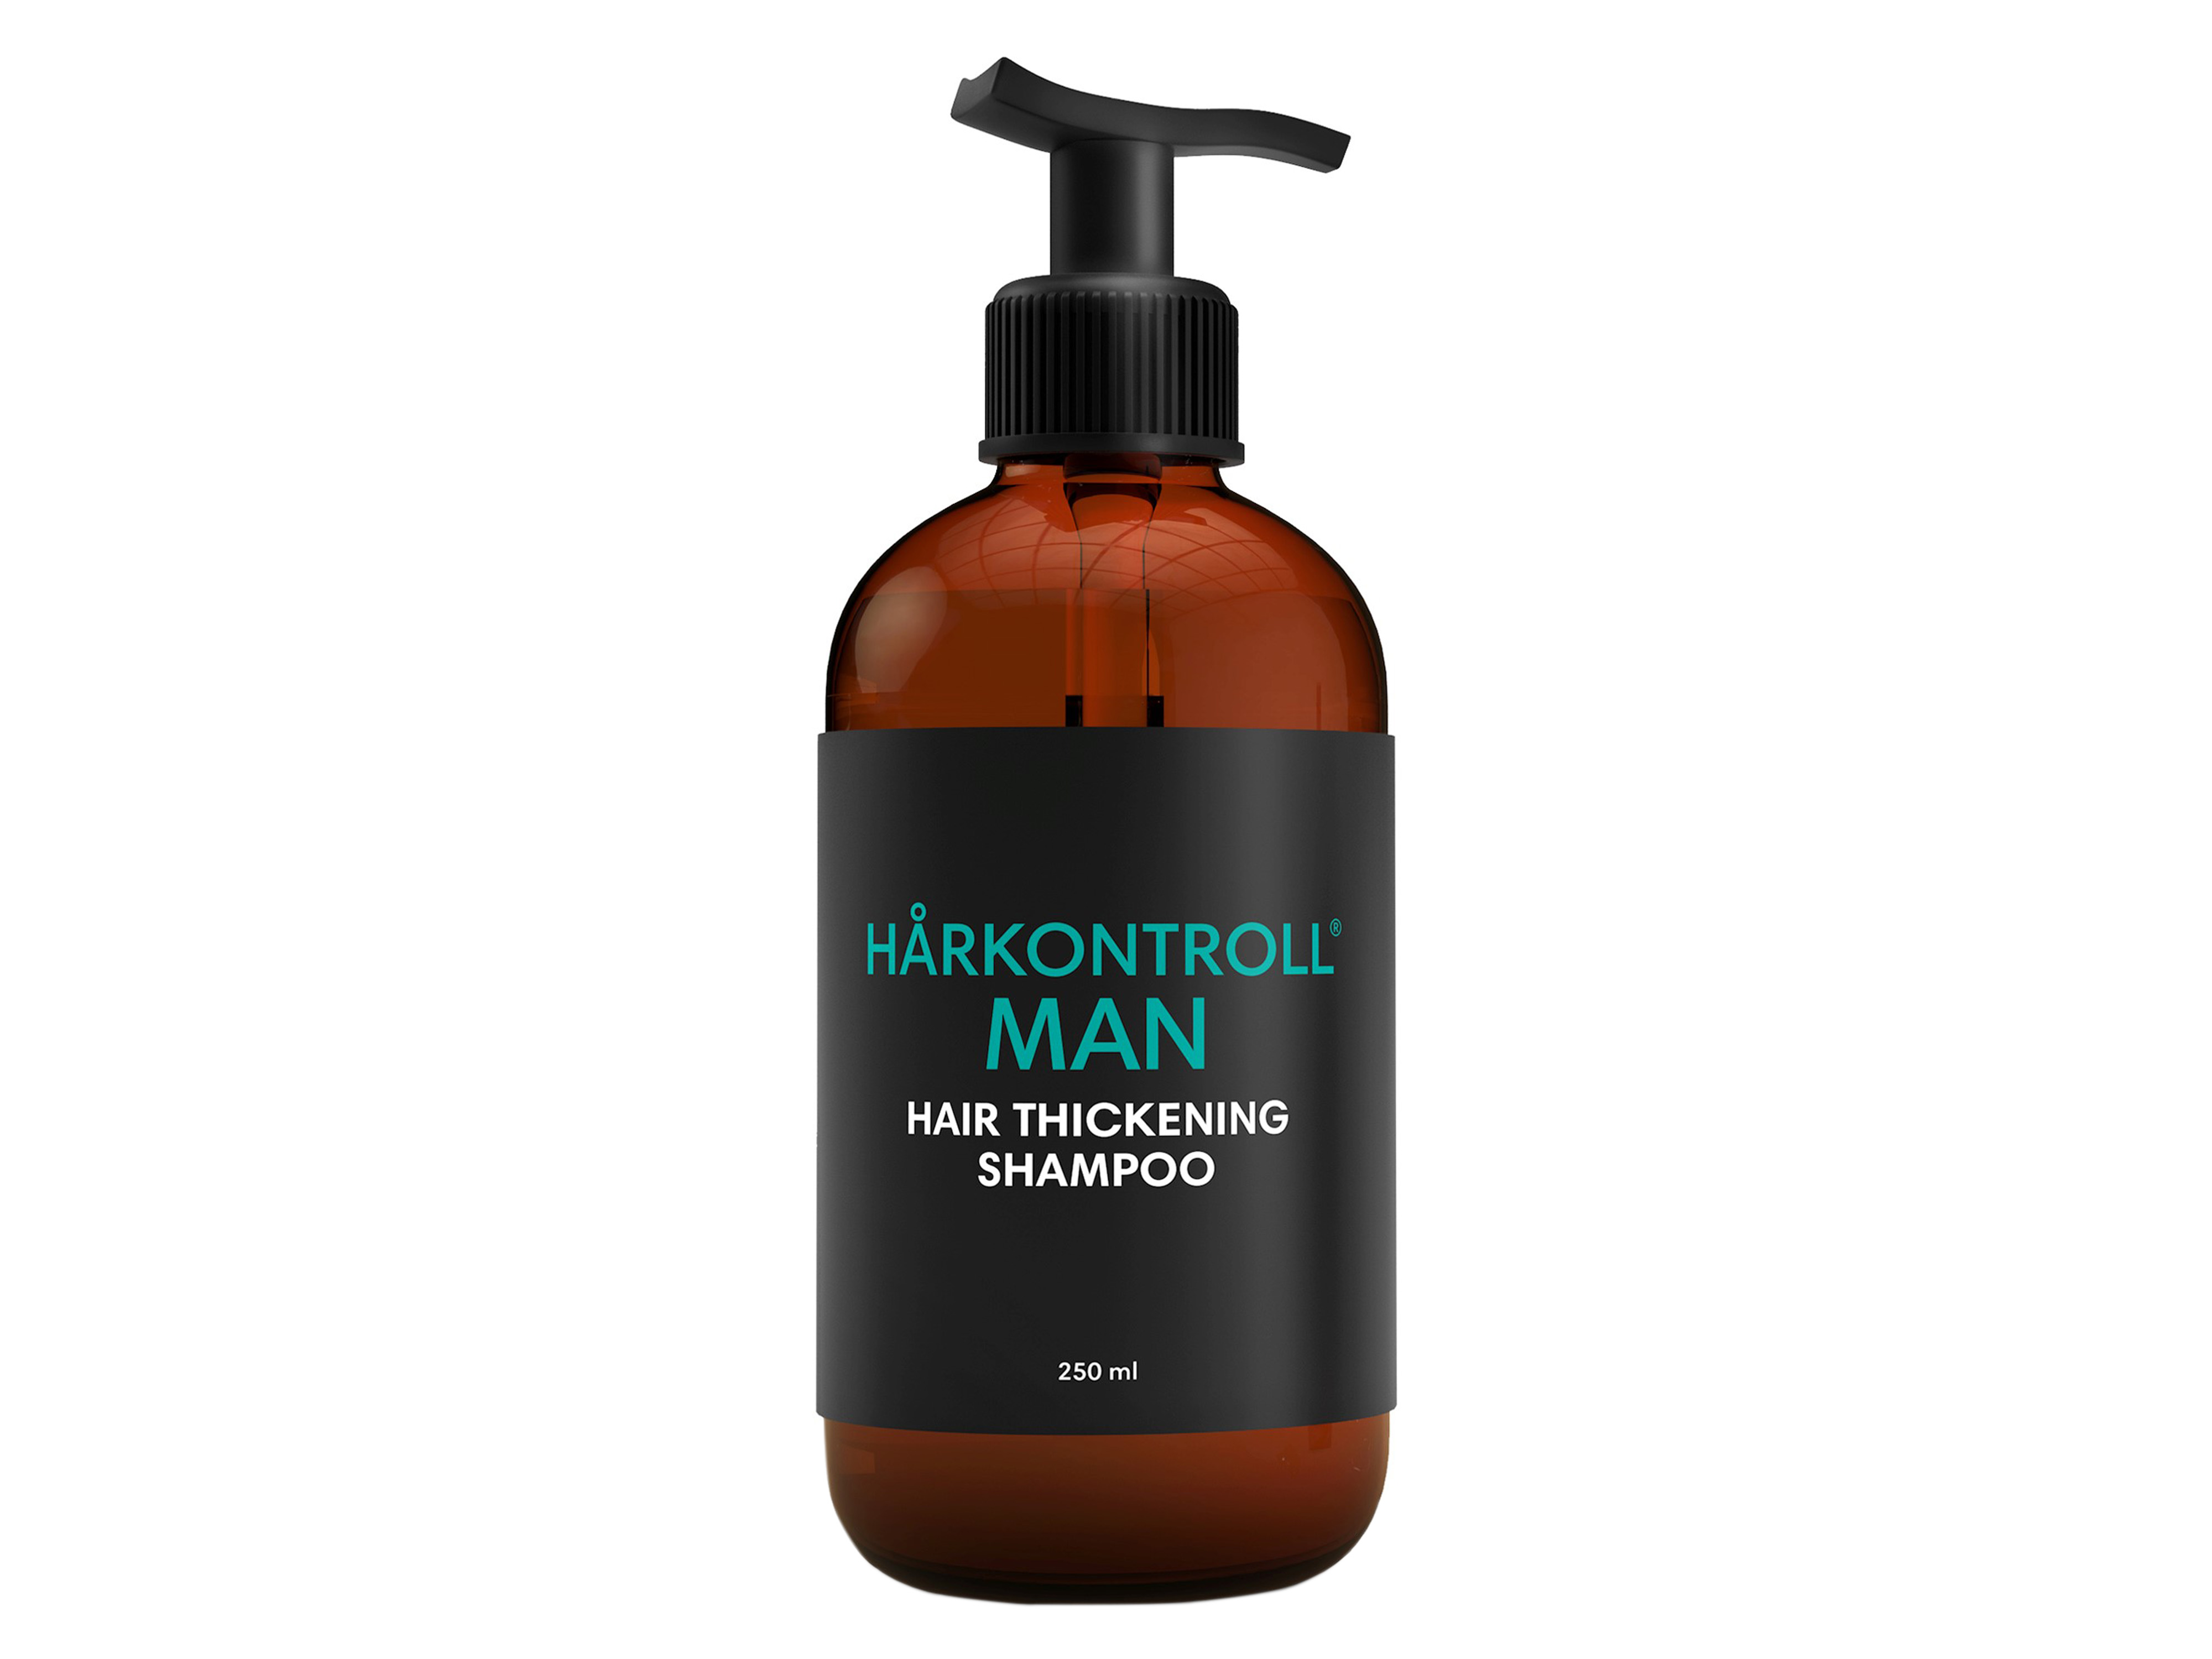 Man Hair Thickening Shampoo, 250 ml